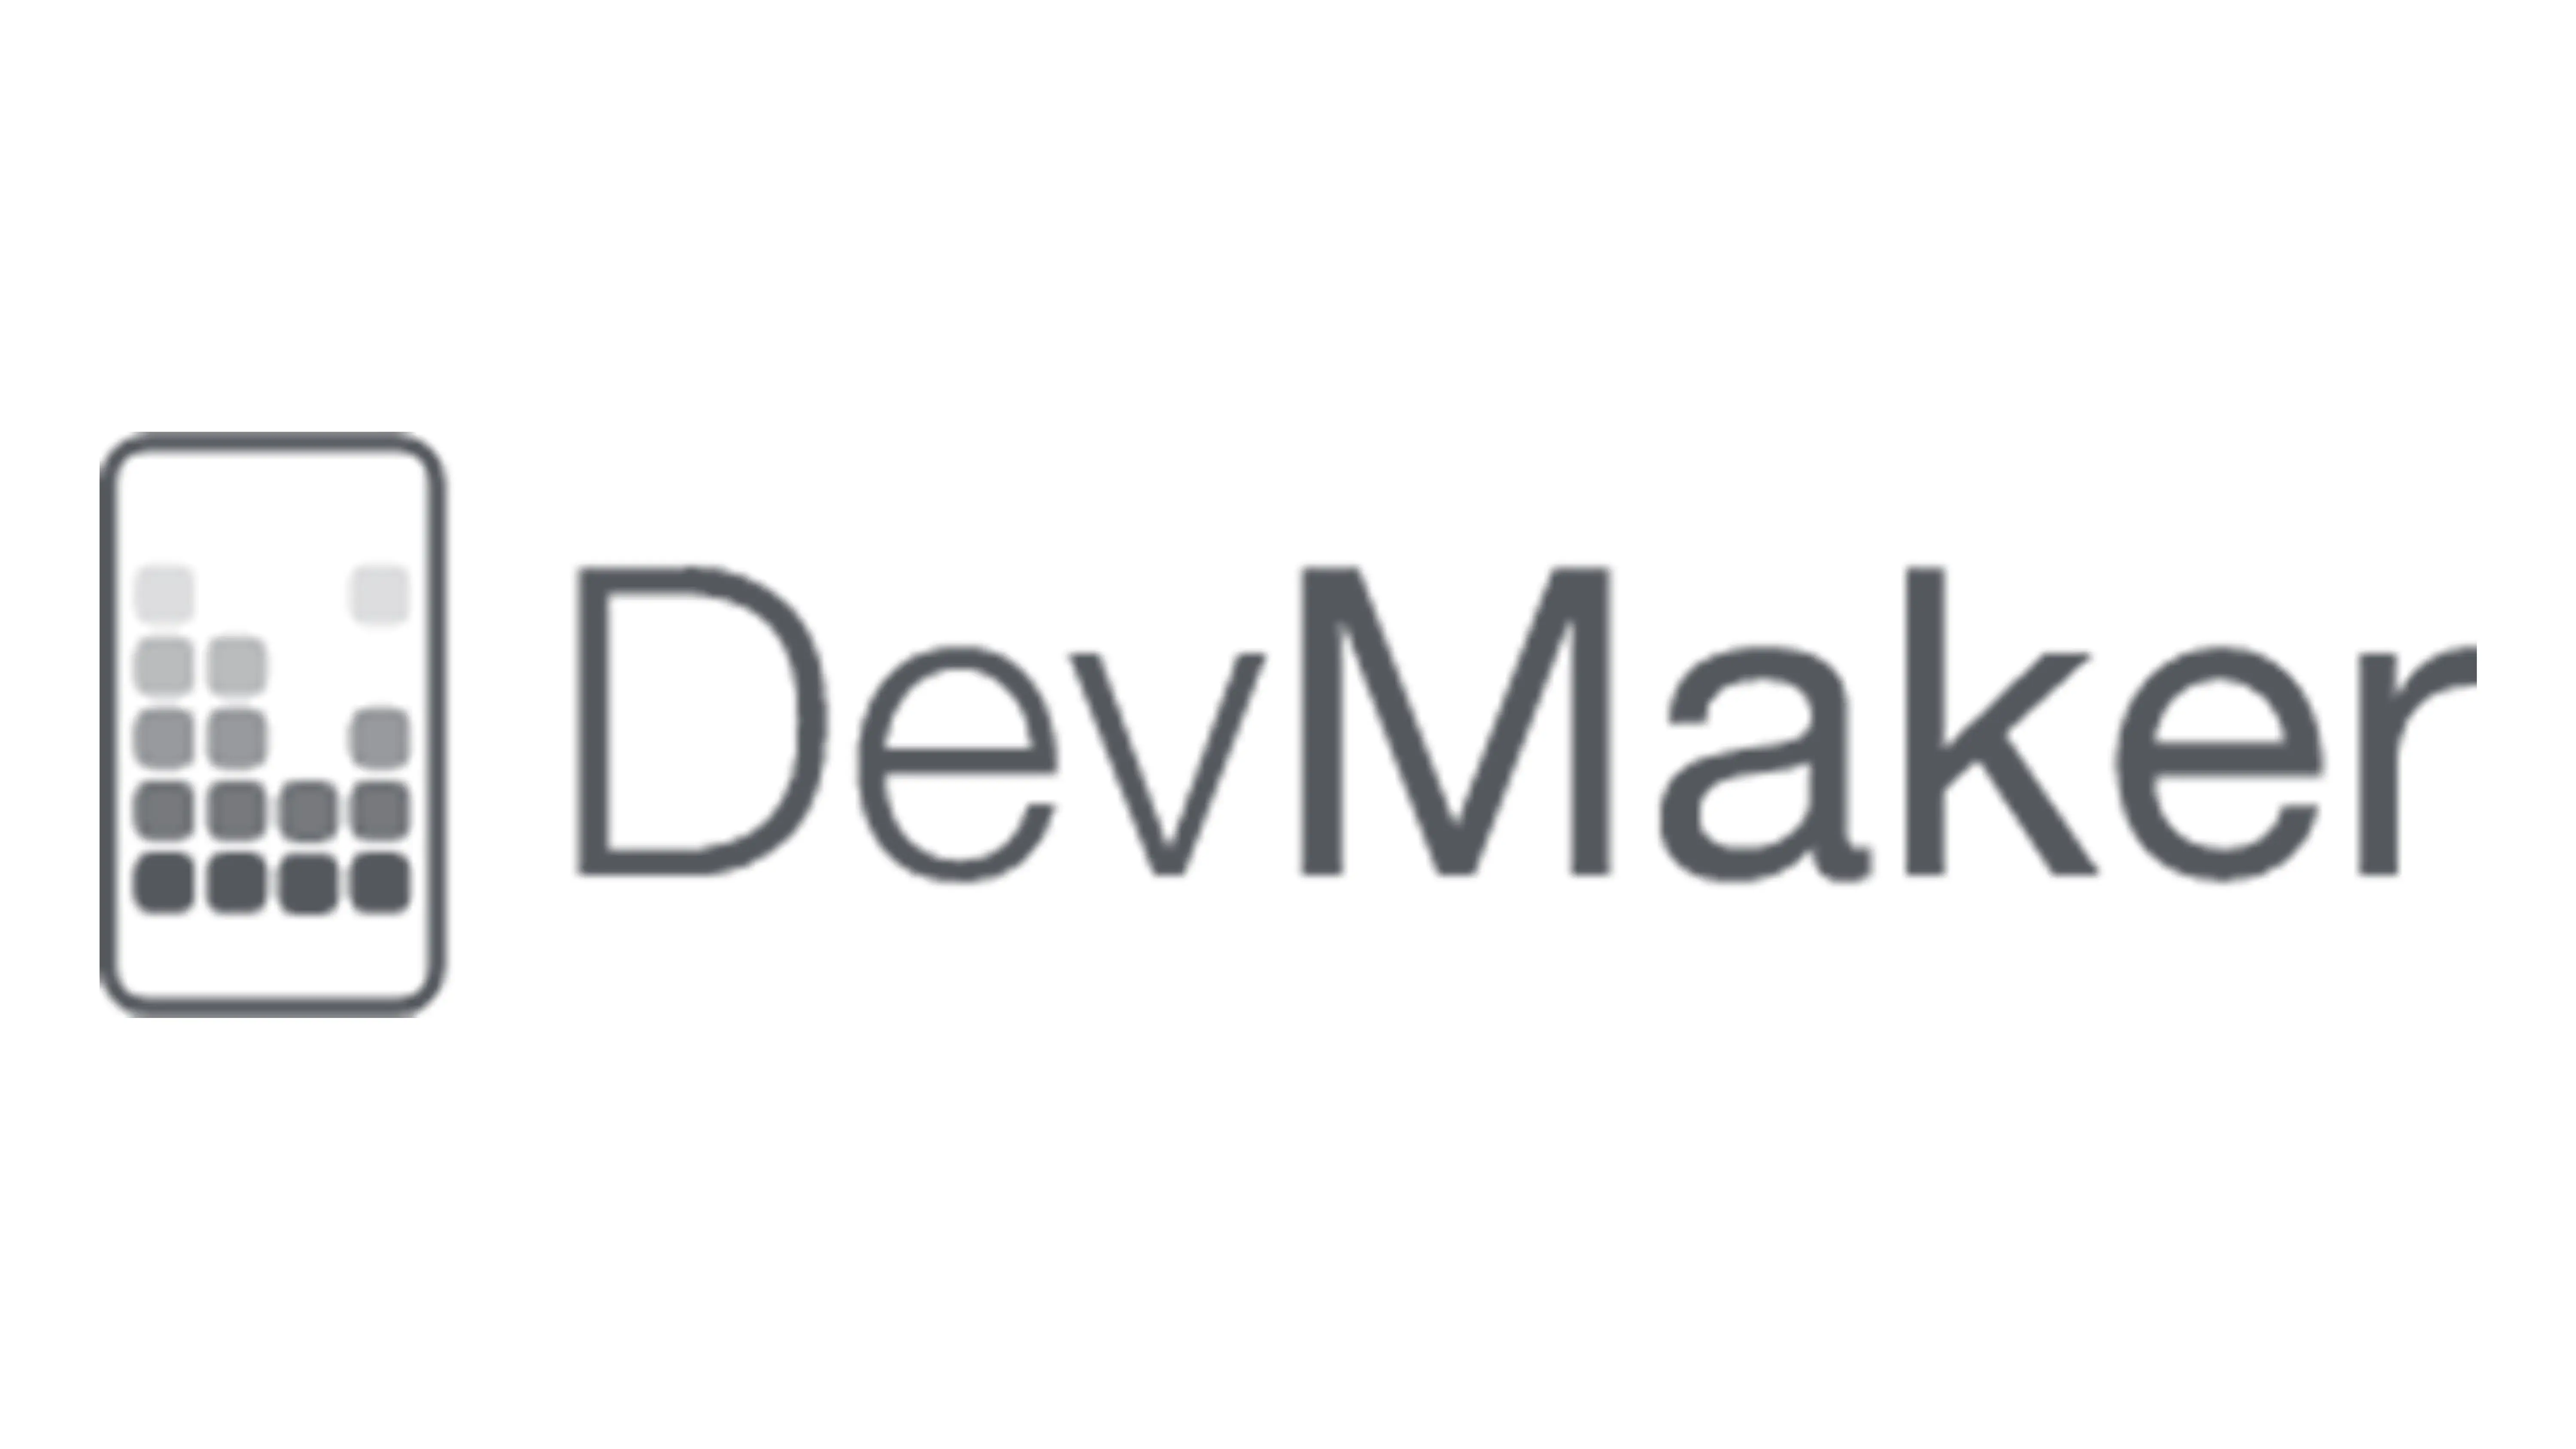 DevMaker